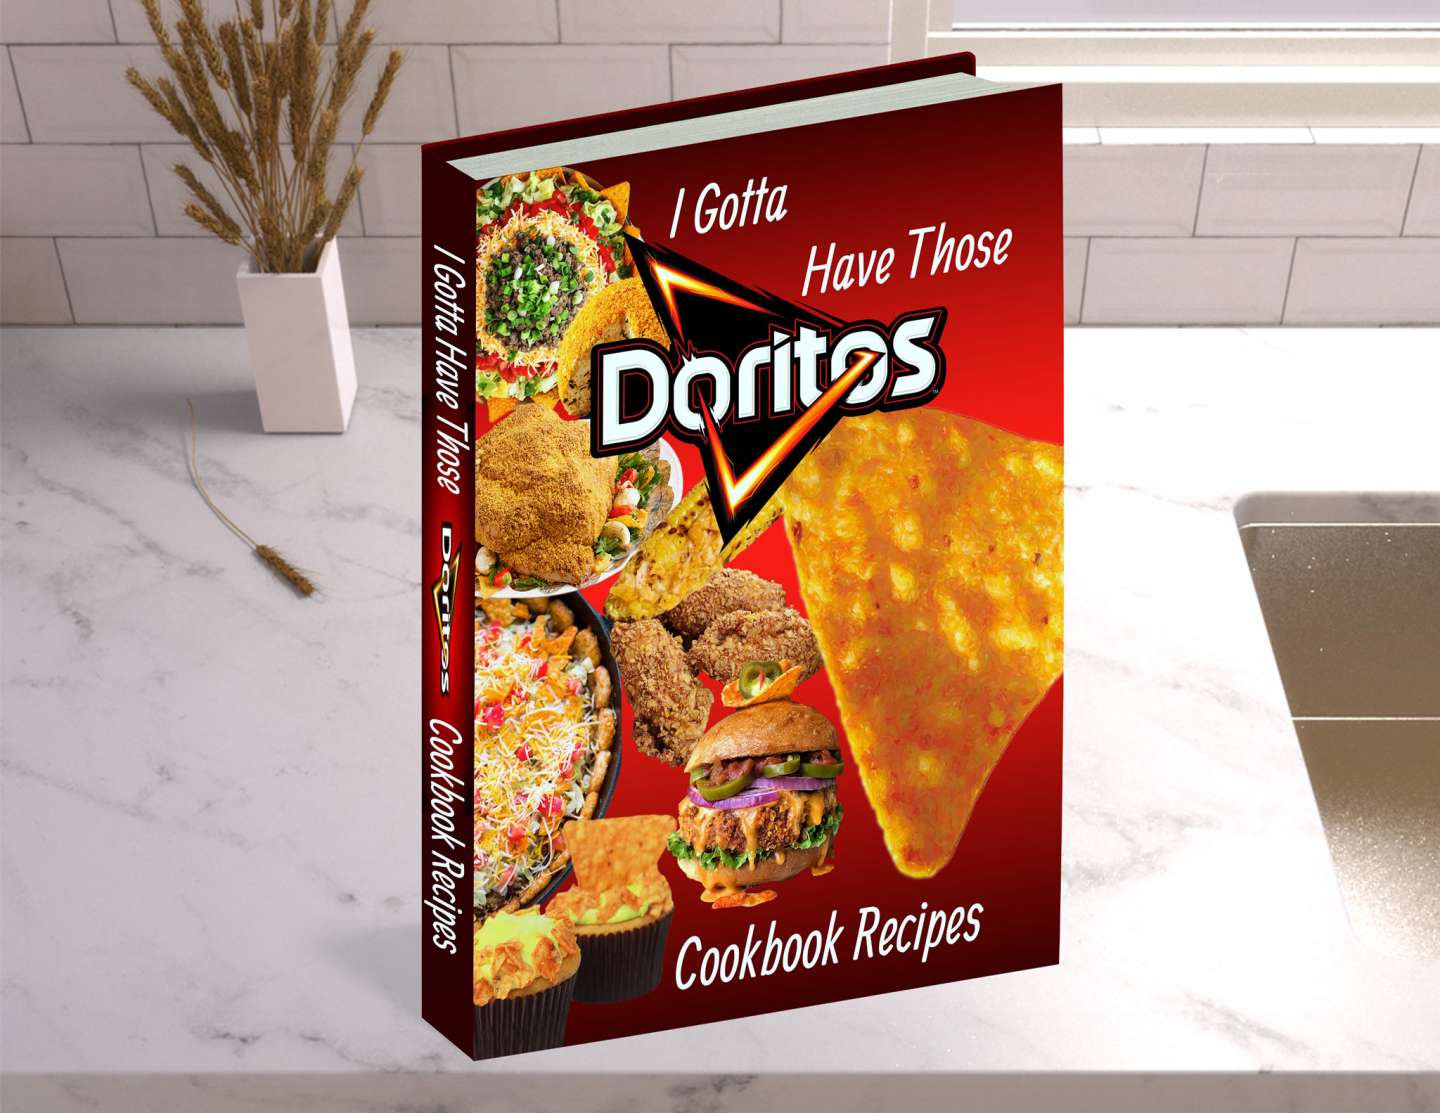 Doritos: The Doritos Cookbook